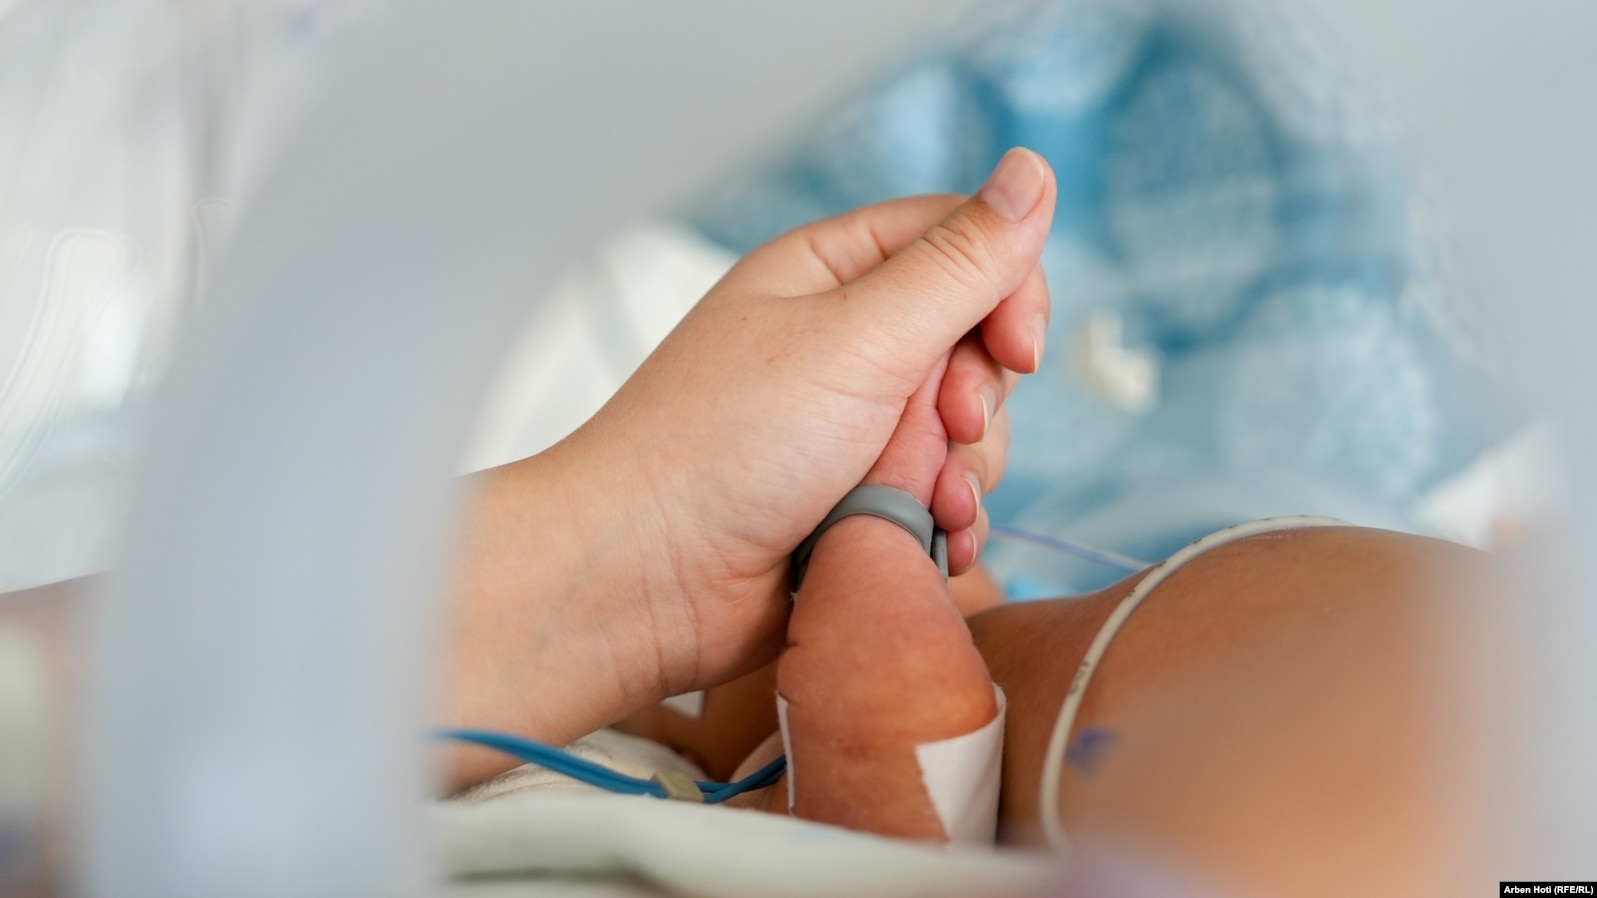 Një nënë i mban dorën foshnjës së saj në inkubator.